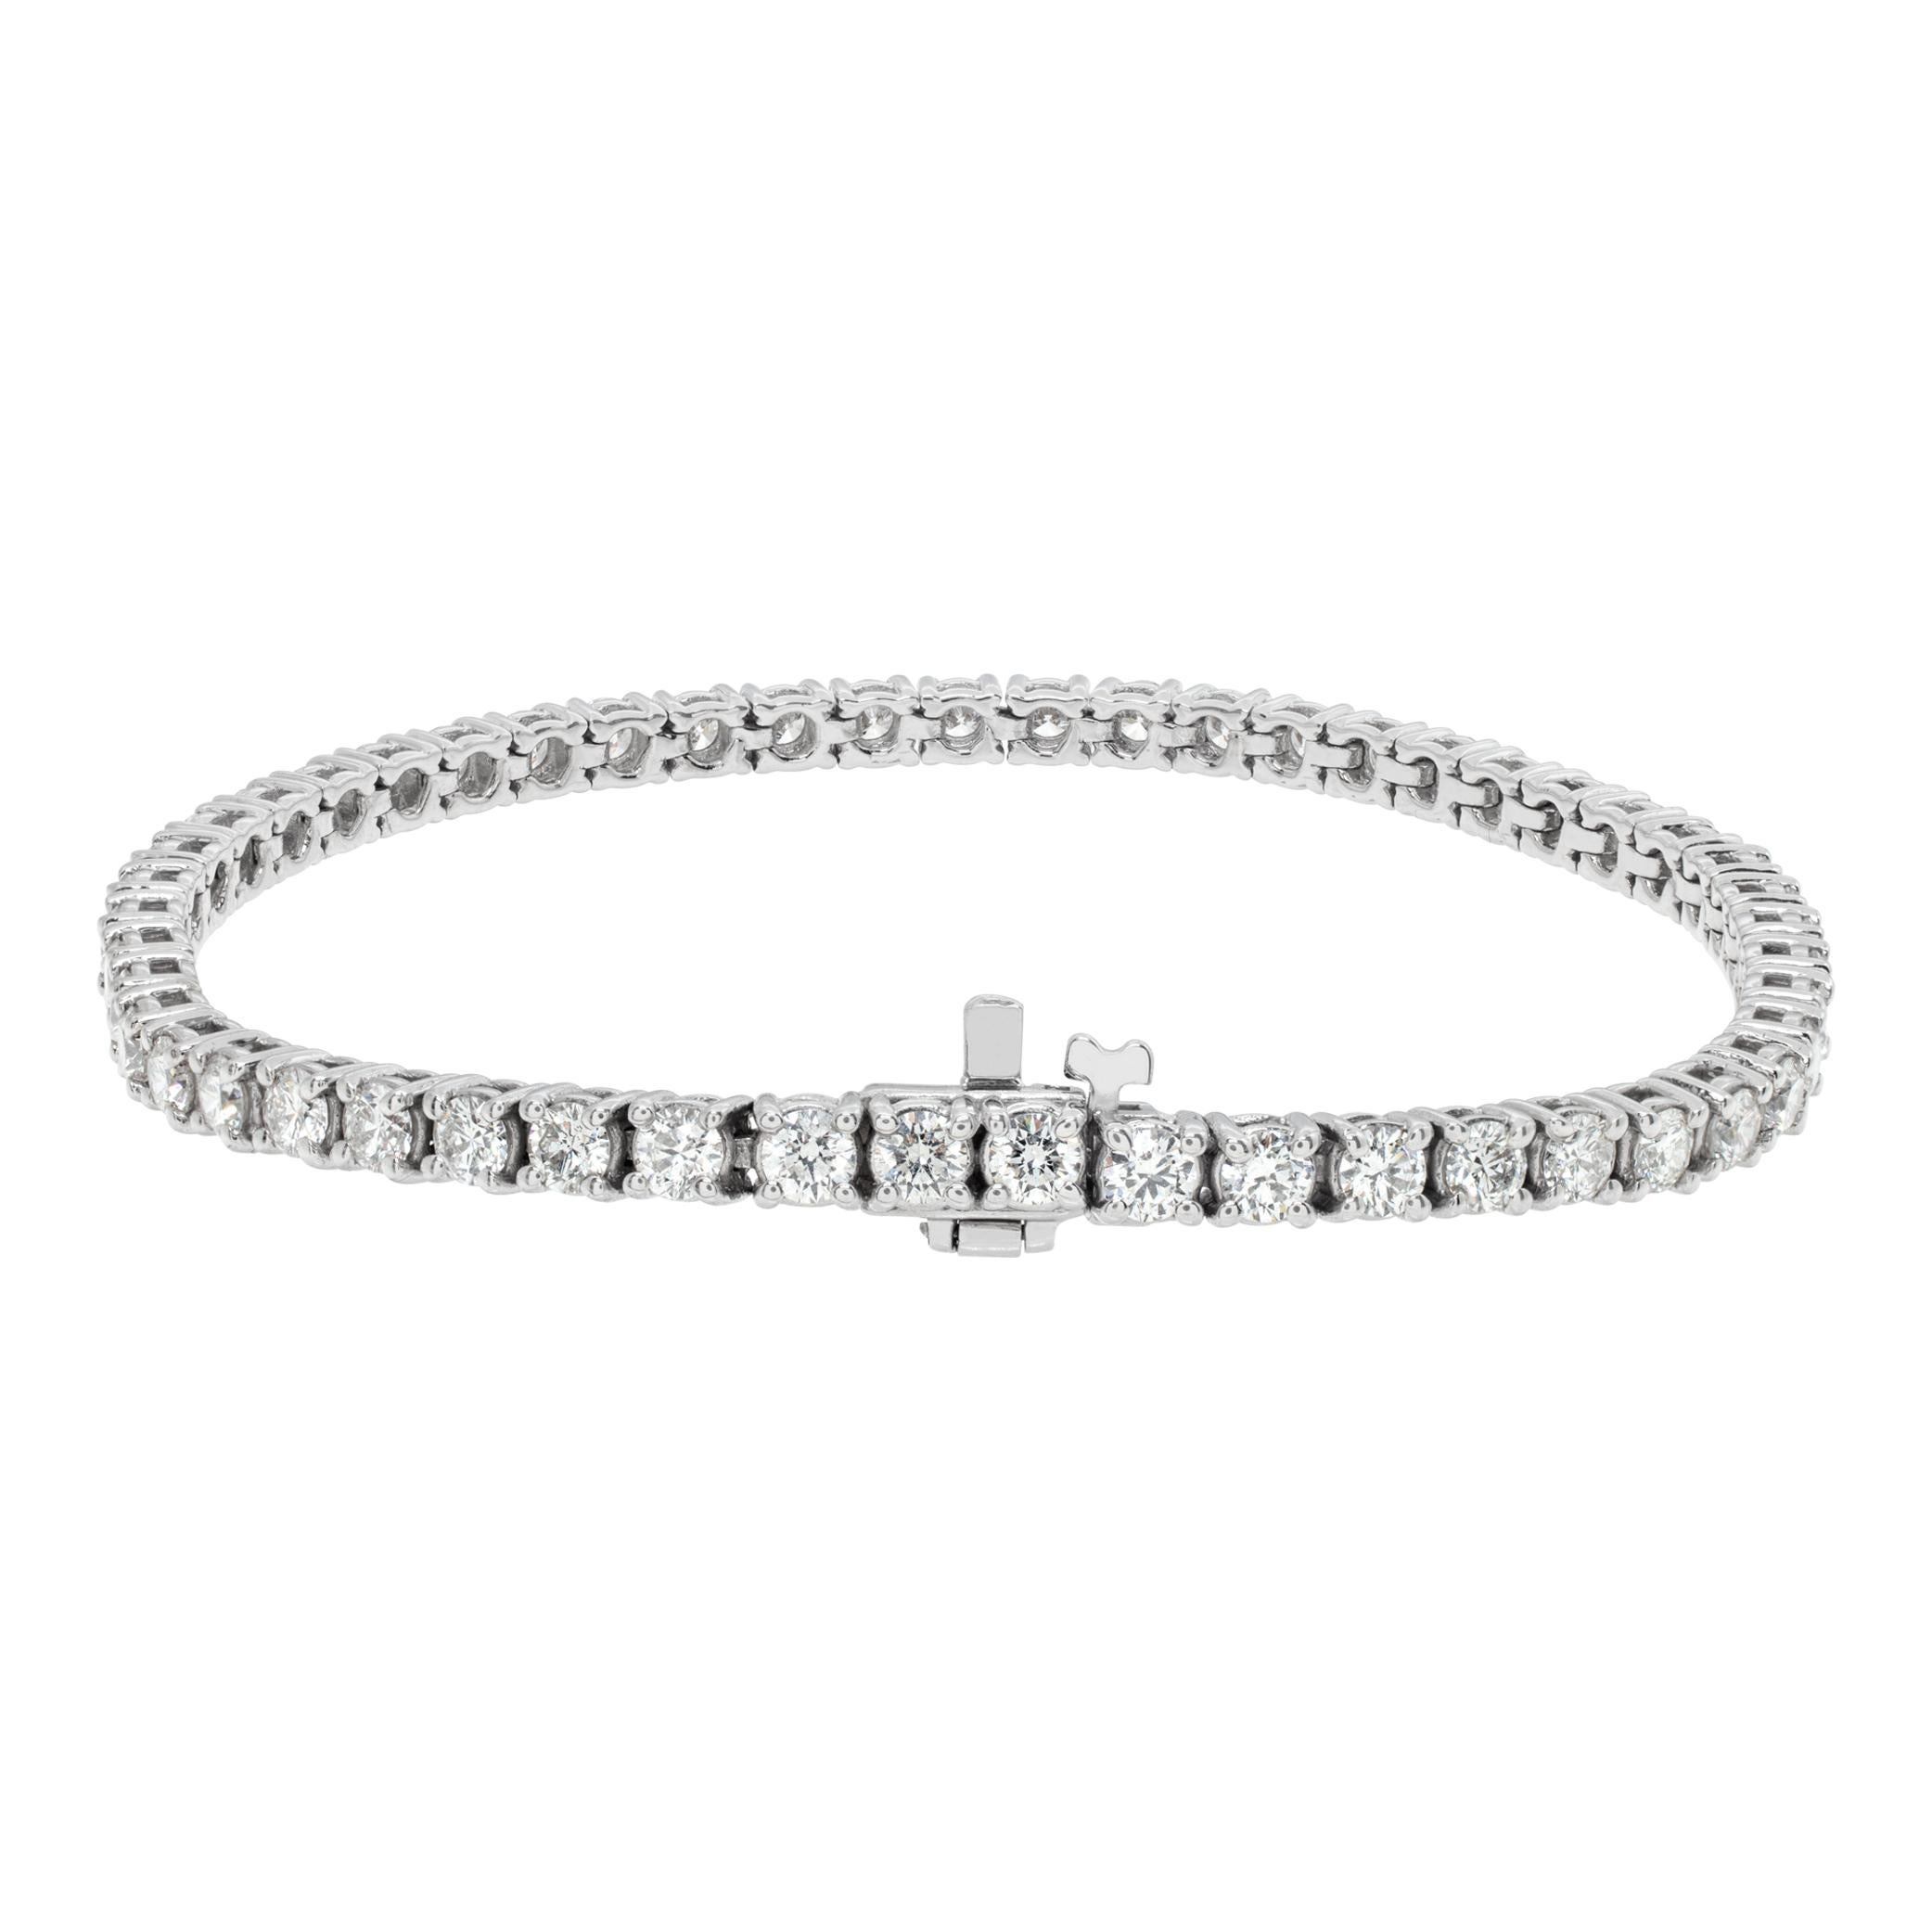 Divin bracelet de tennis en or blanc 18 carats avec 4.95 carats de diamants ronds de taille brillant (couleur G-H, pureté VS), longueur 7.25 pouces.
